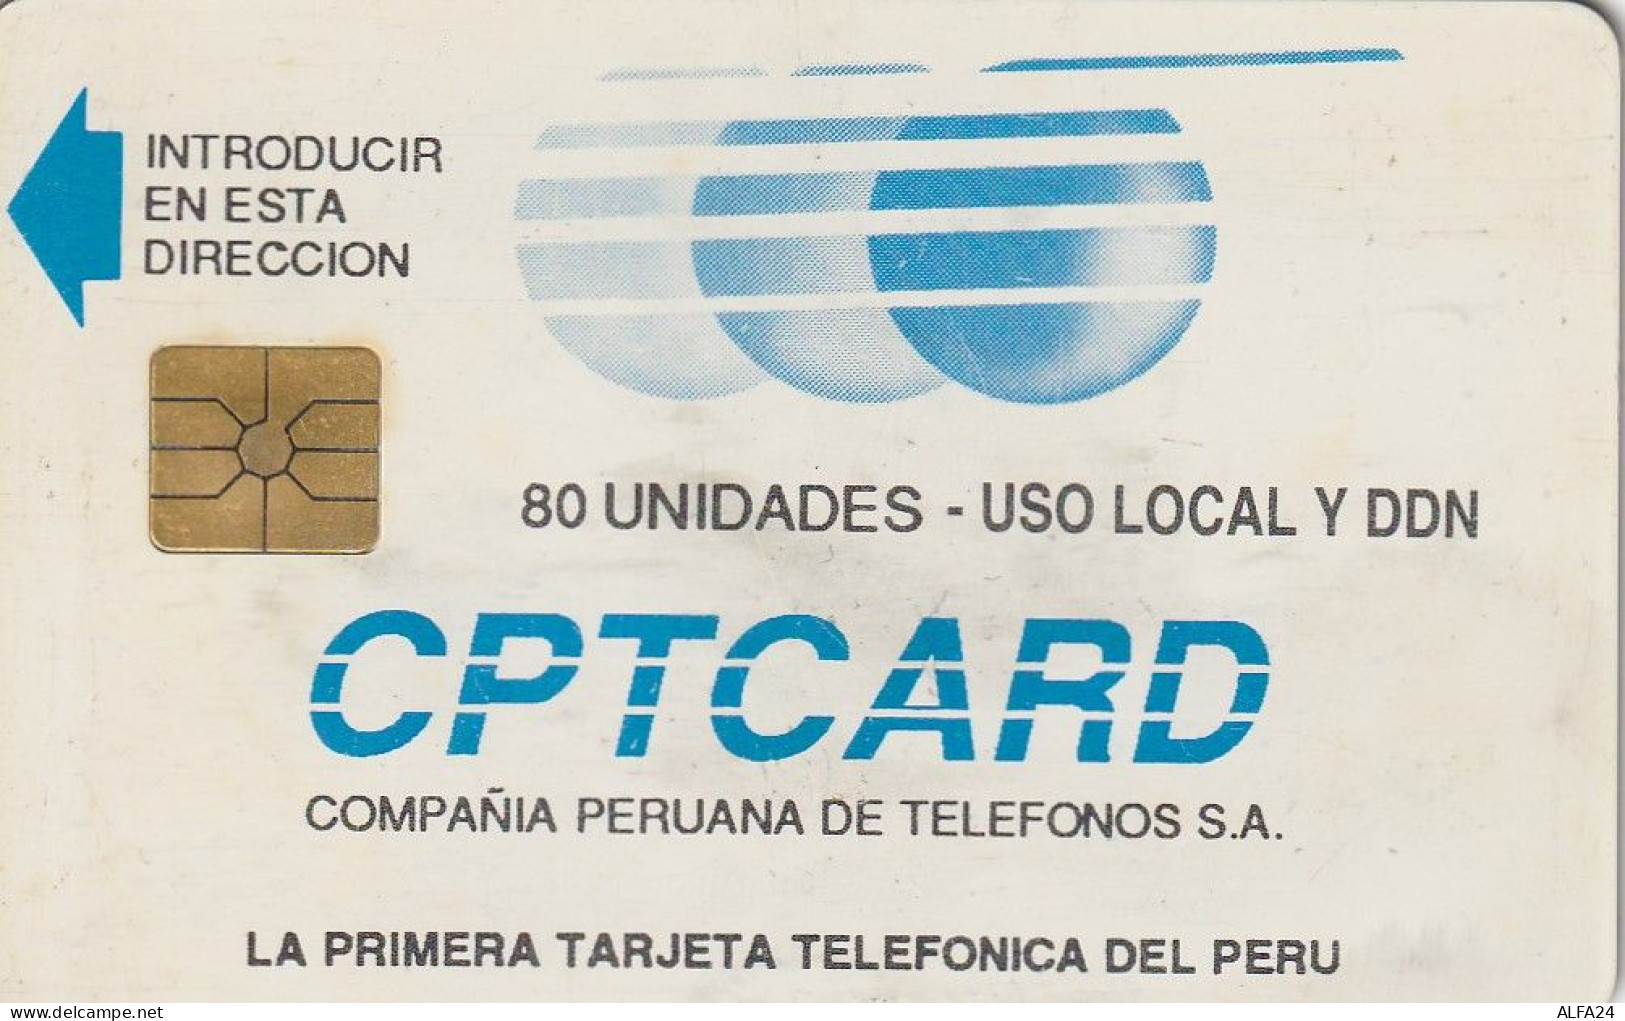 PHONE CARD PERU CPTCARD 80 (E63.54.3 - Perù